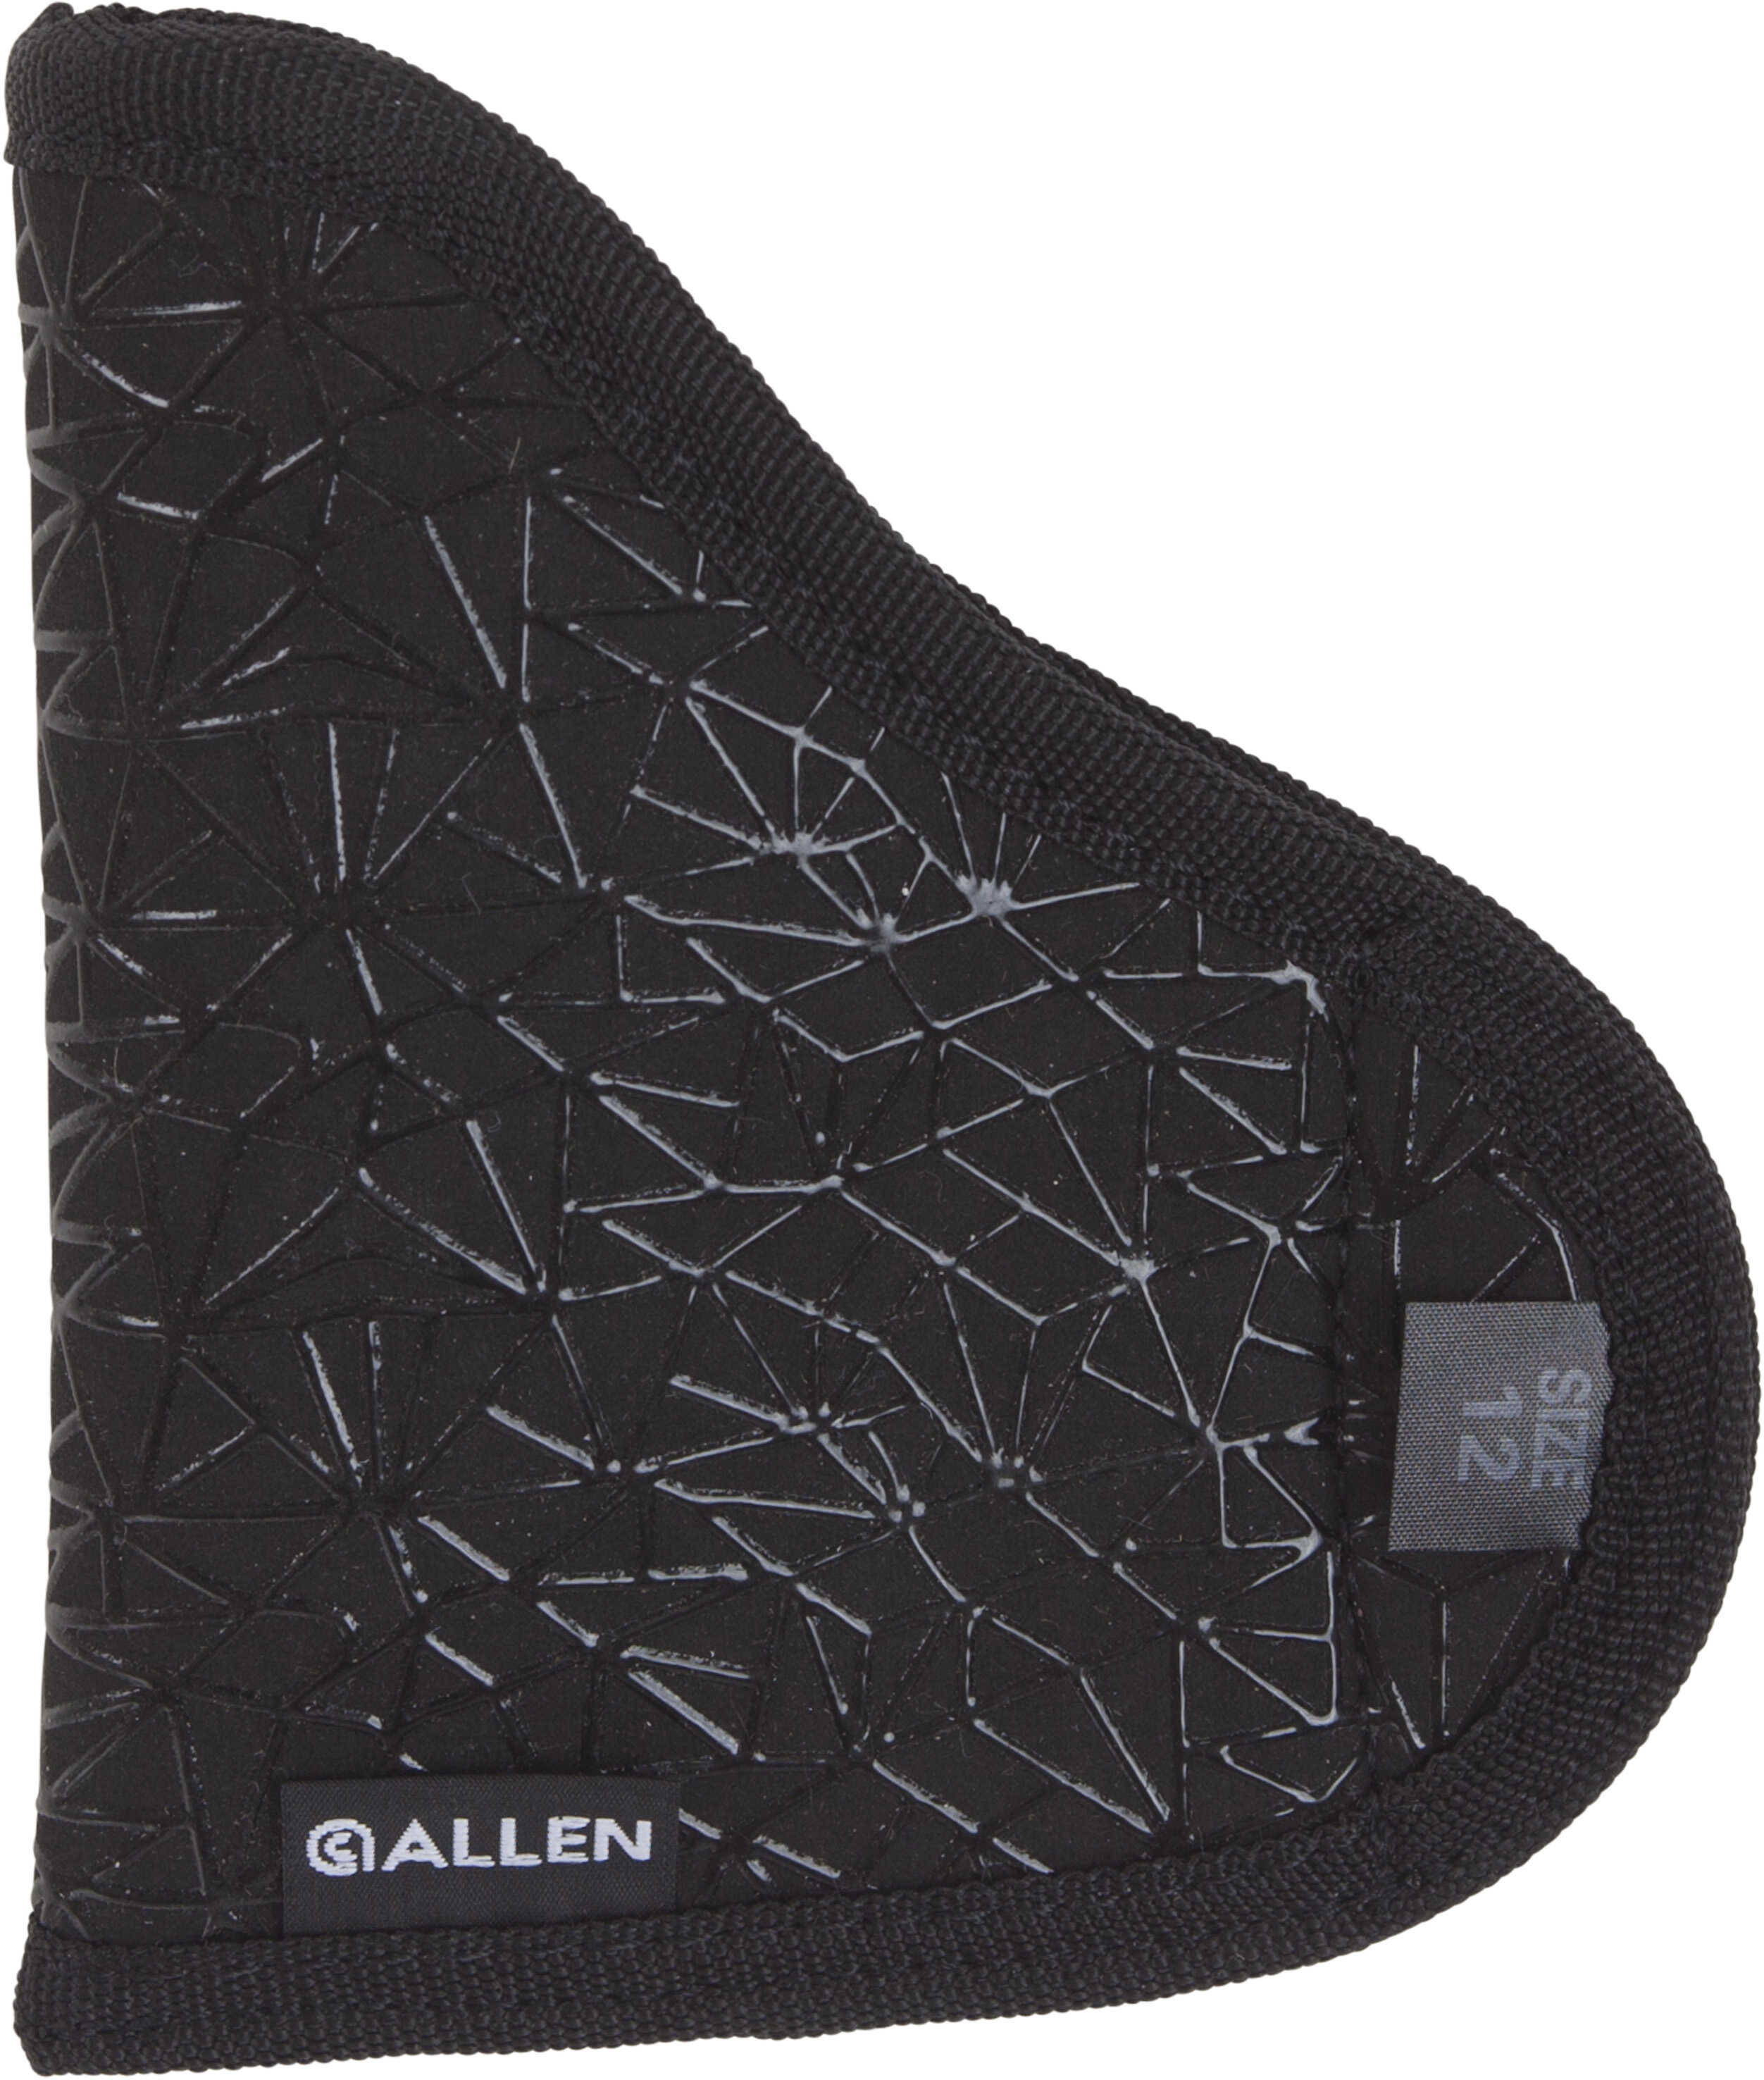 Allen Spiderweb Inside the Pocket Holster Black Size 12 Model: 44912